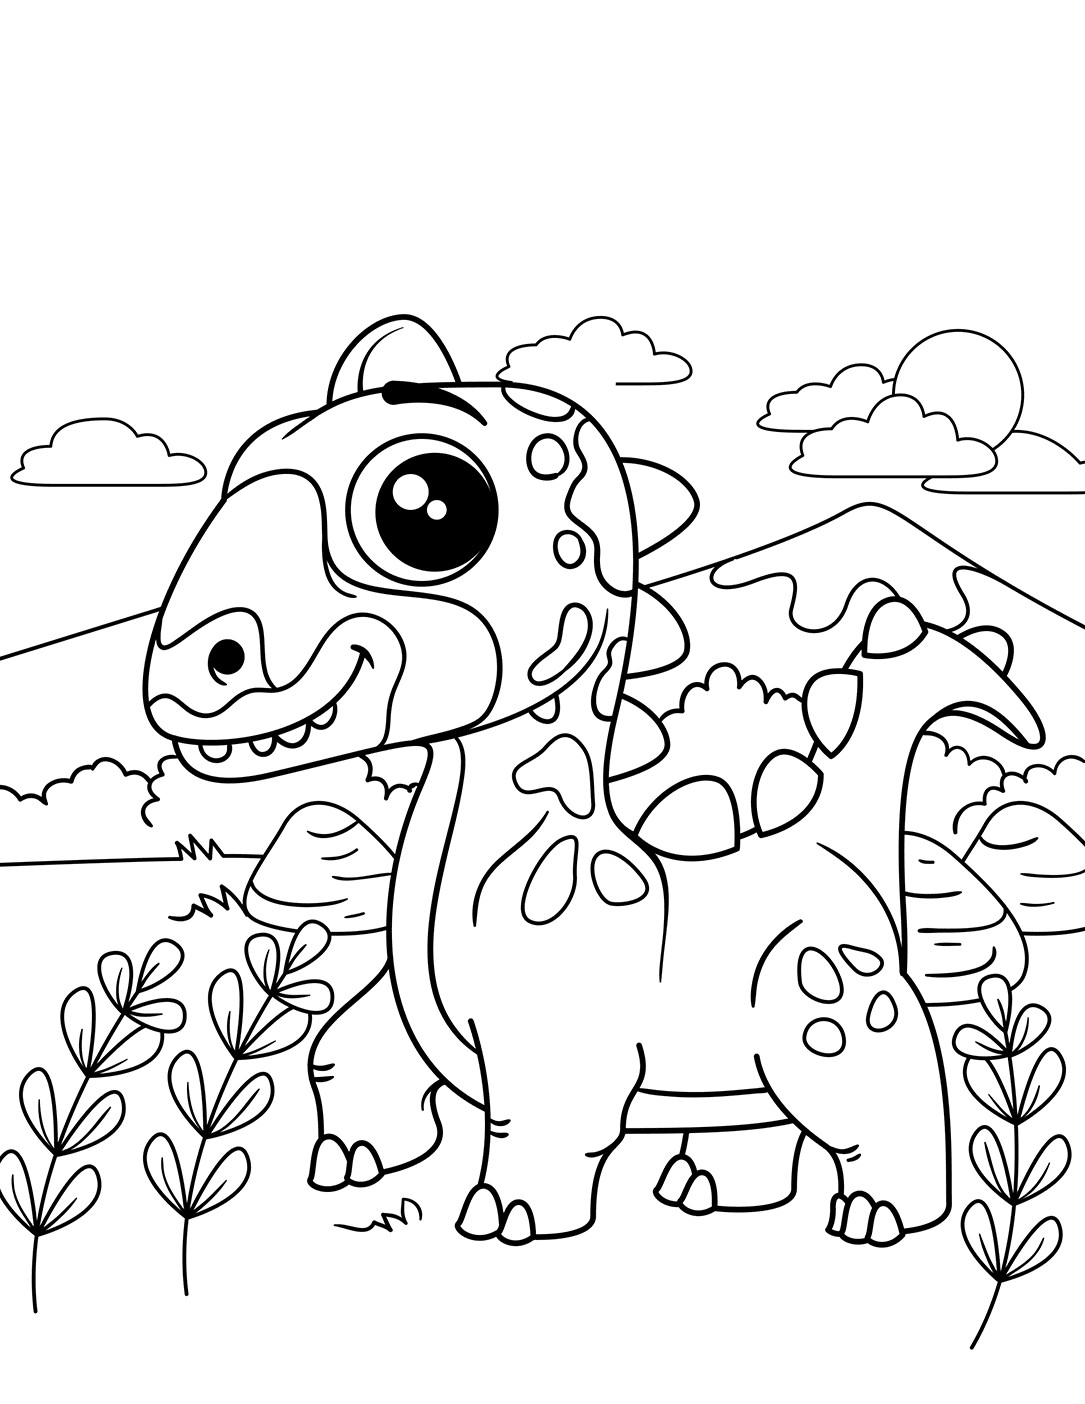 귀여운 공룡 coloring page